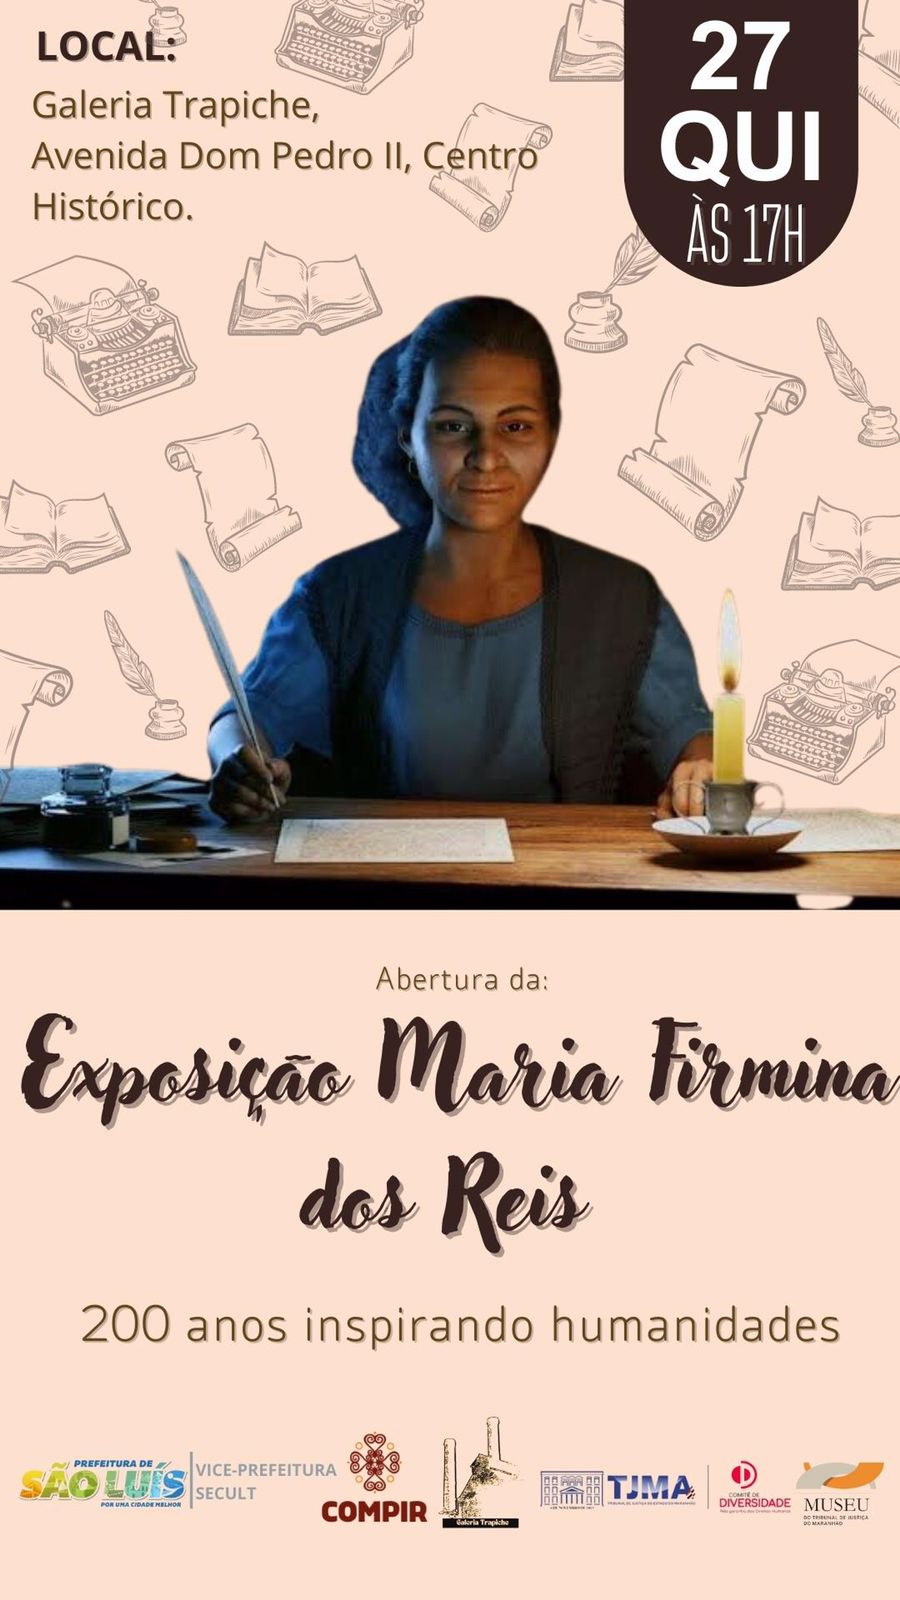 Prefeitura de São Luís e TJ-MA promovem exposição sobre Maria Firmina dos Reis na Galeria Trapiche